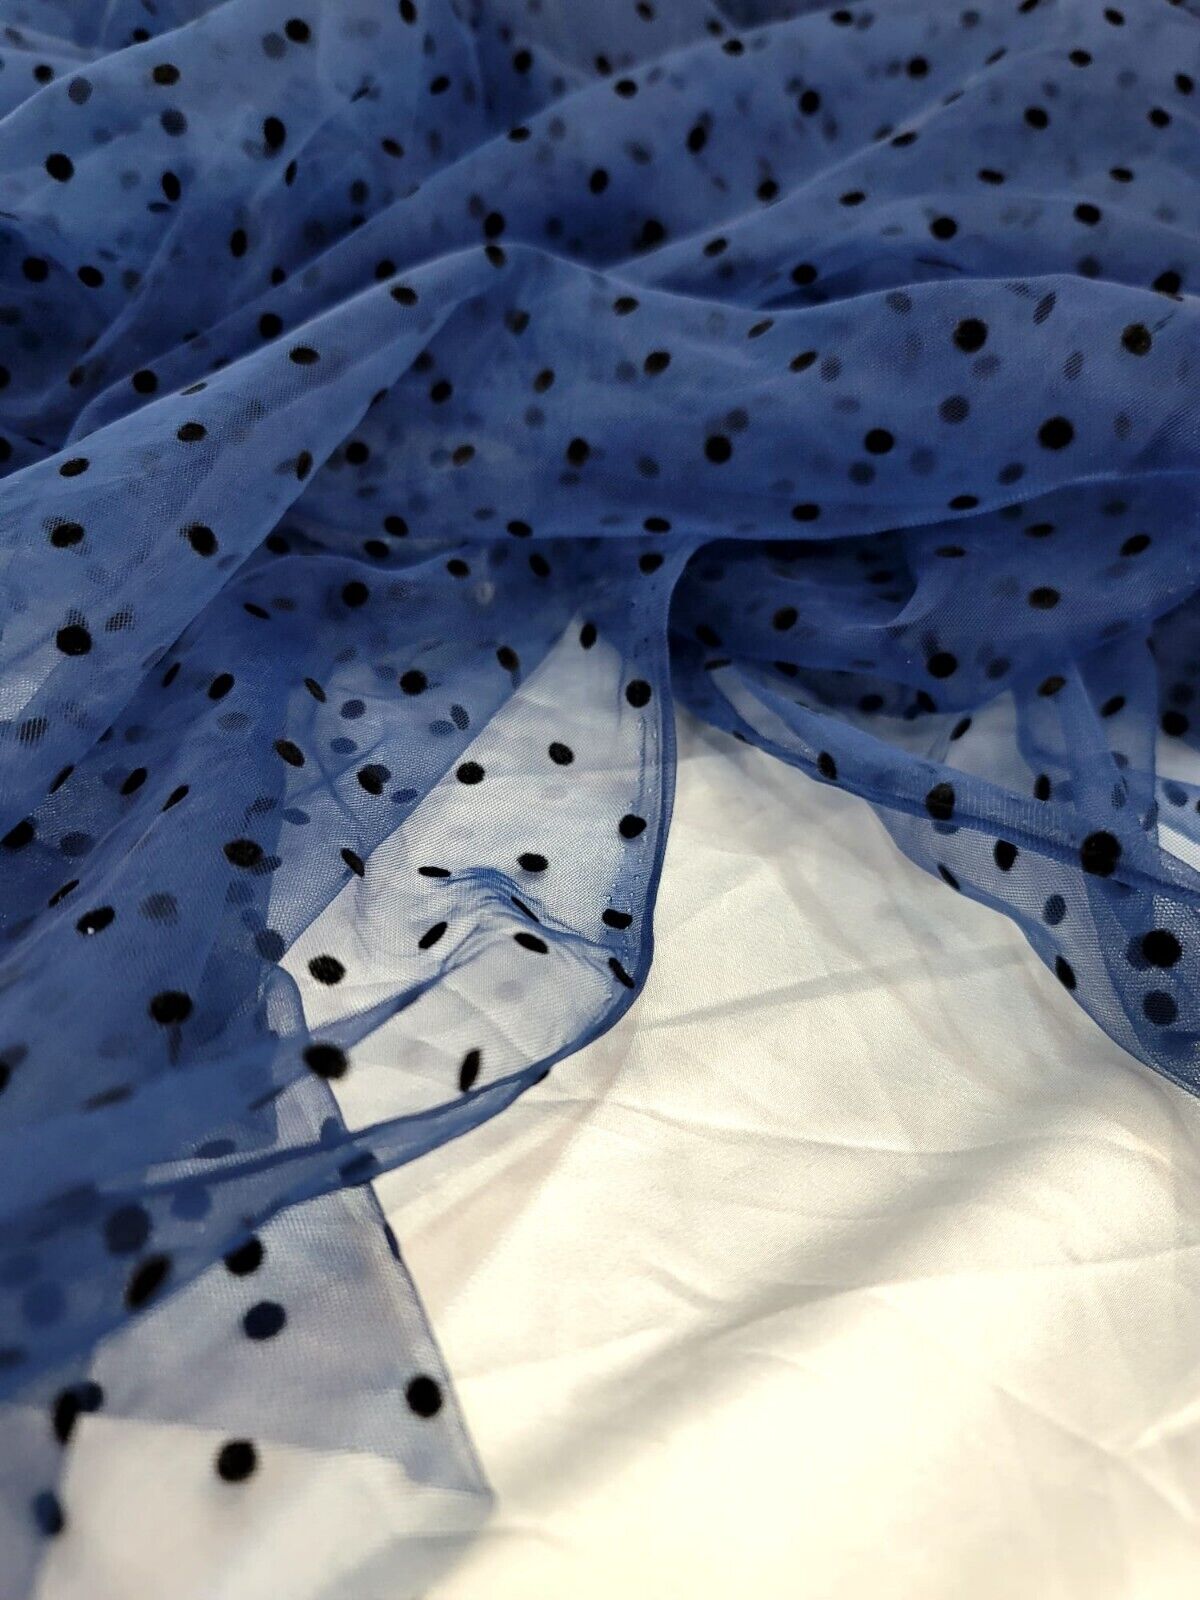 Navy Blue Tulle Mesh Fabric Sold By The Yard Black Velvet Polka-dot For Dress